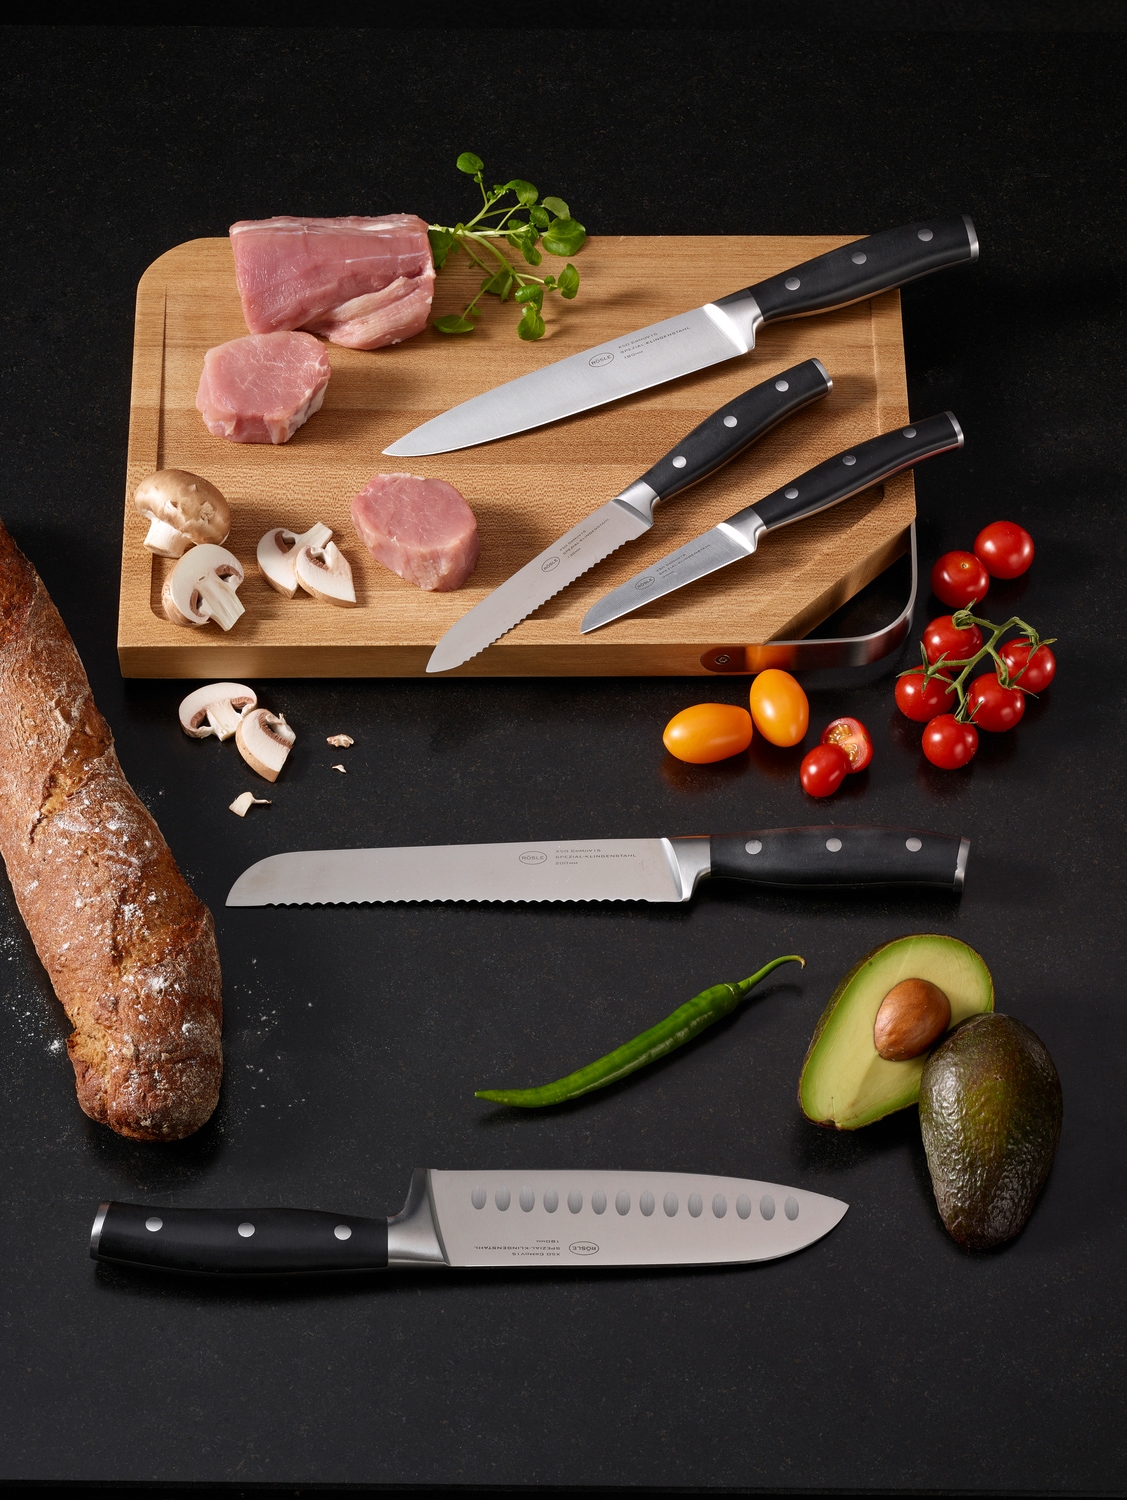 RÖSLE Santokumesser »Tradition«, (1 tlg.), für Fleisch, Fisch und Gemüse, Kullenschliff, Klingenspezialstahl